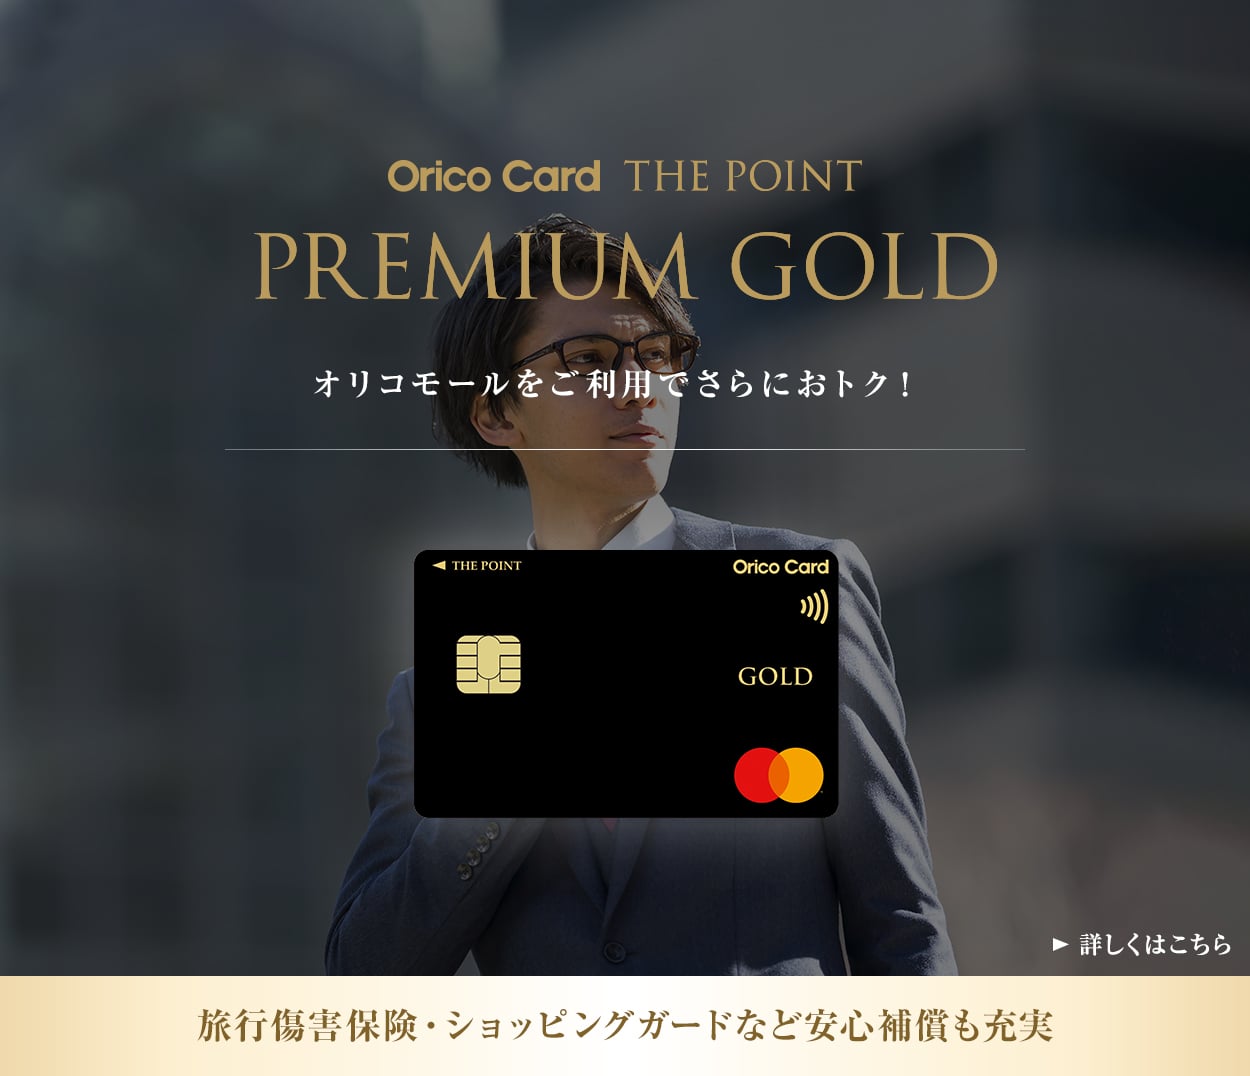 Orico Card THE POINT PREMIUM GOLD オリコモールをご利用でさらにおトク！ 旅行傷害保険・ショッピングガードなど安心補償も充実 詳しくはこちら